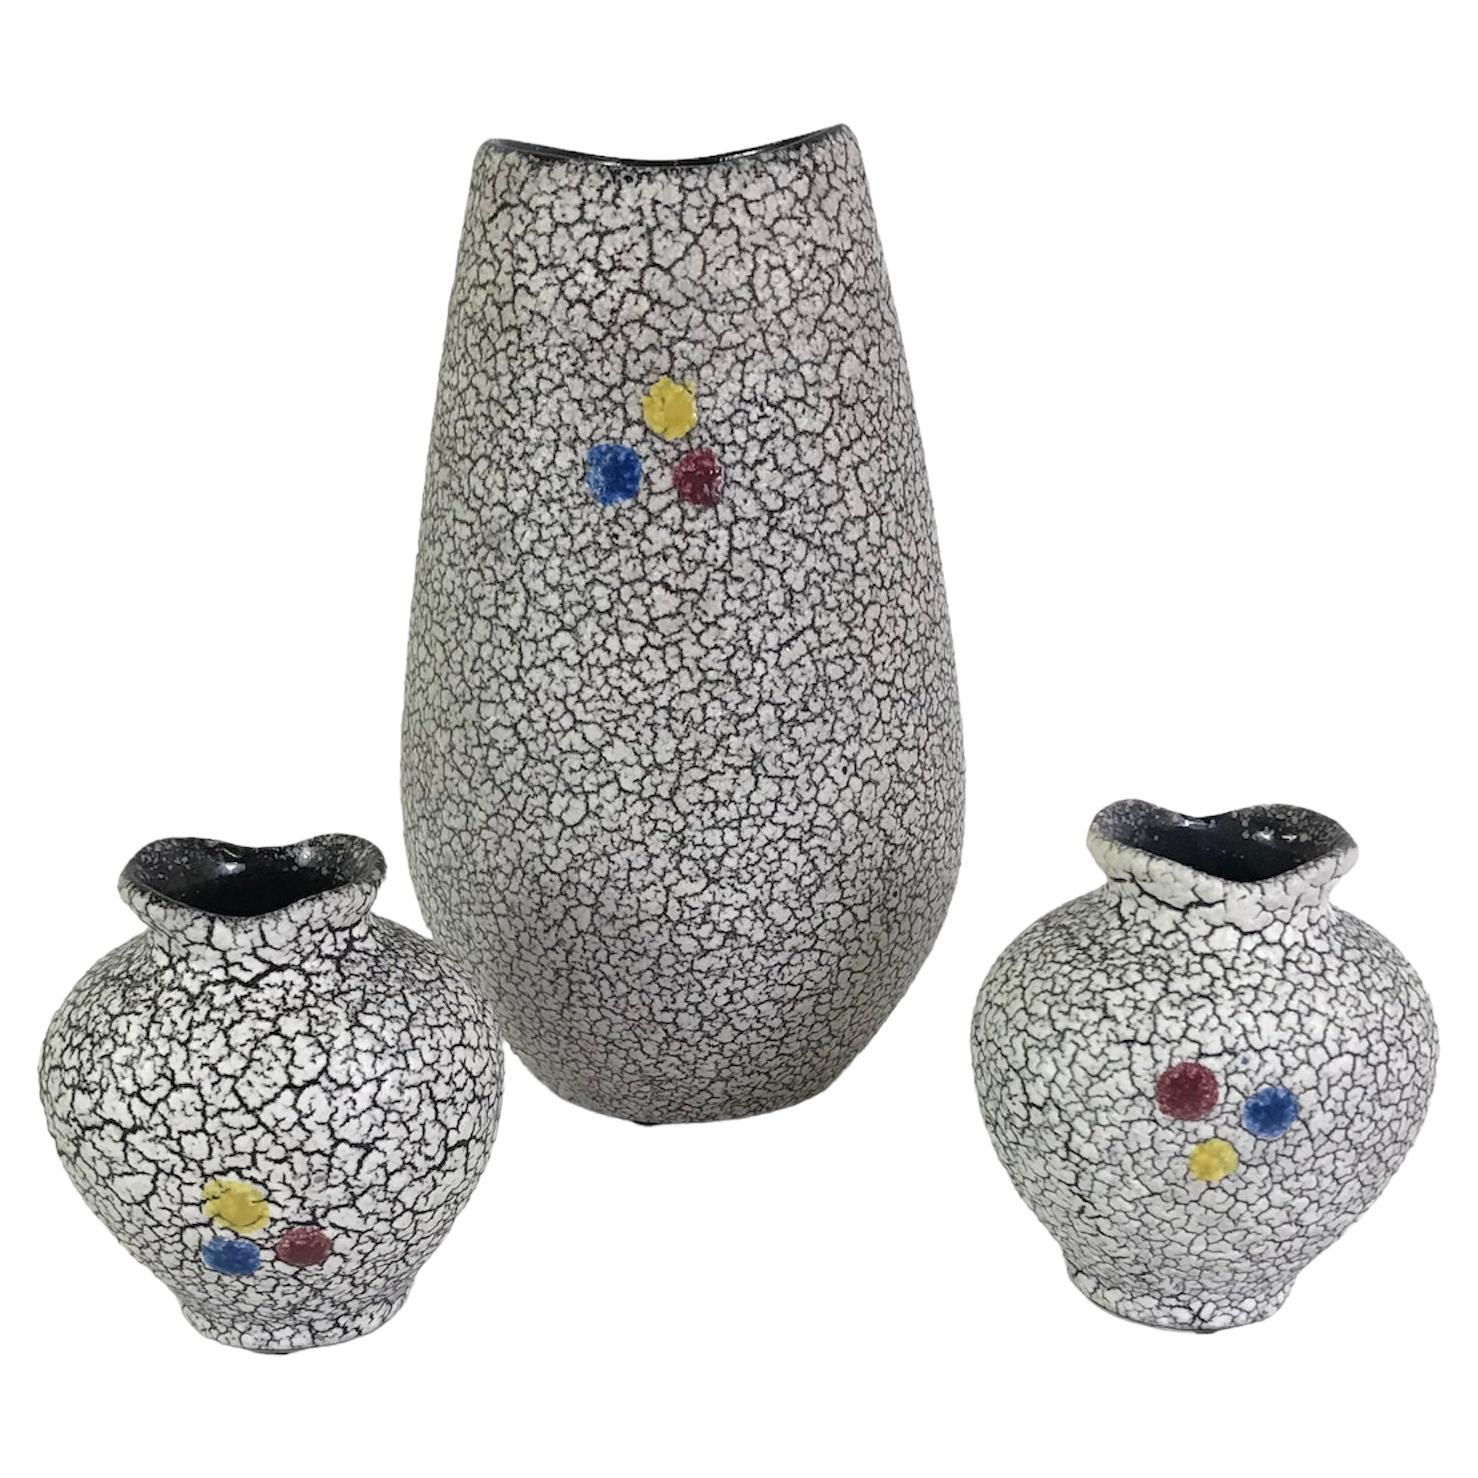 1958 Gruppe von 3 Jopeko Keramik Geknitterte Lava-Glasur Keramik Deutschland